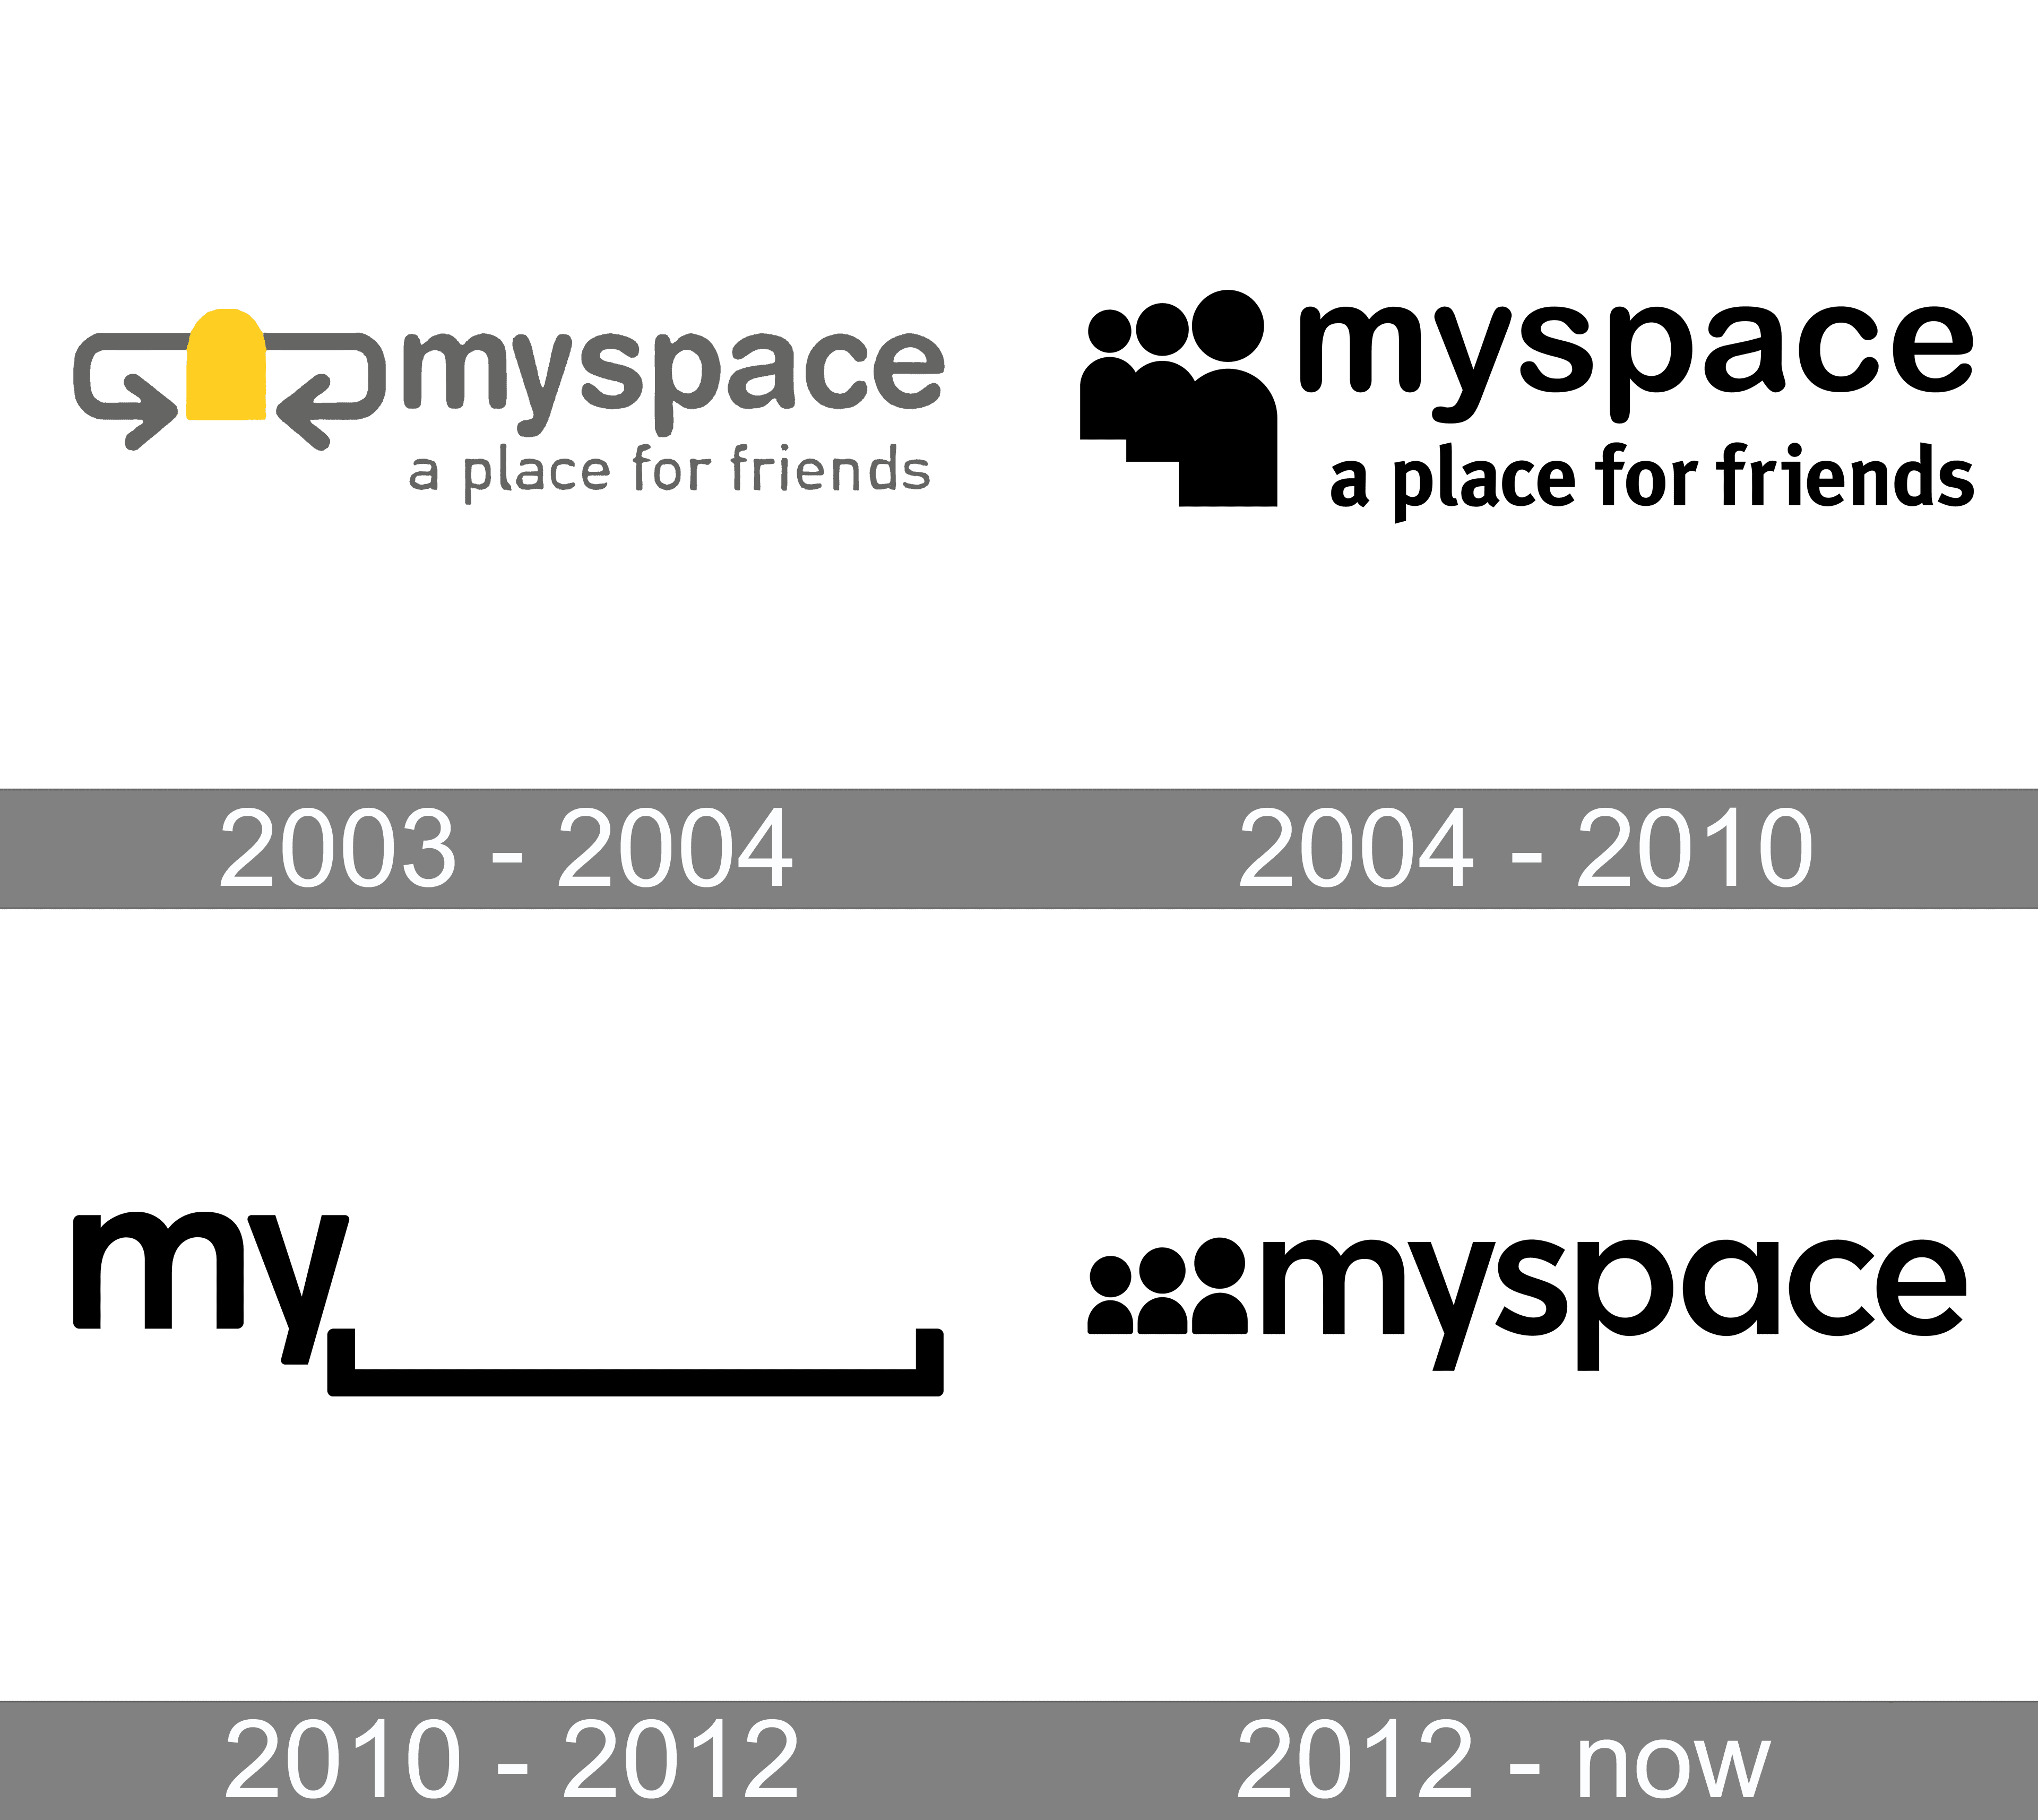 MYSPACE